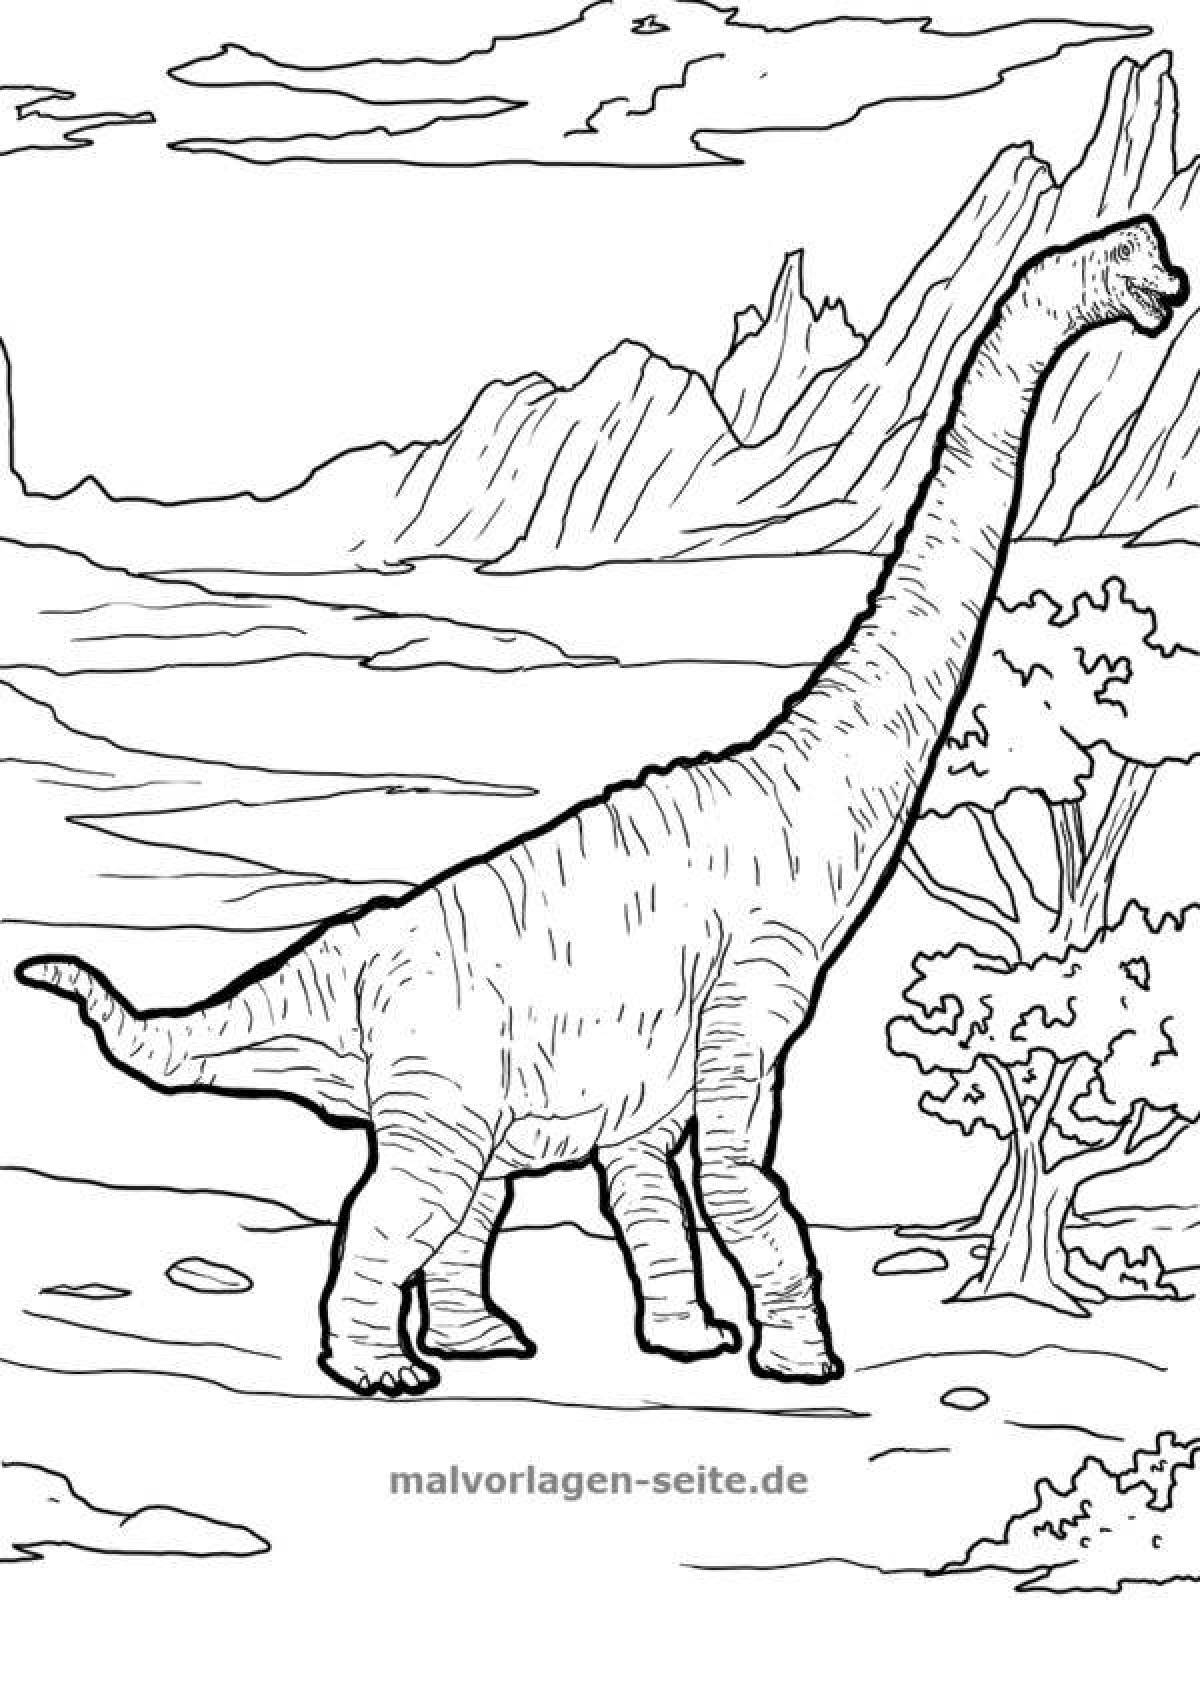 Exquisite brachiosaurus coloring book